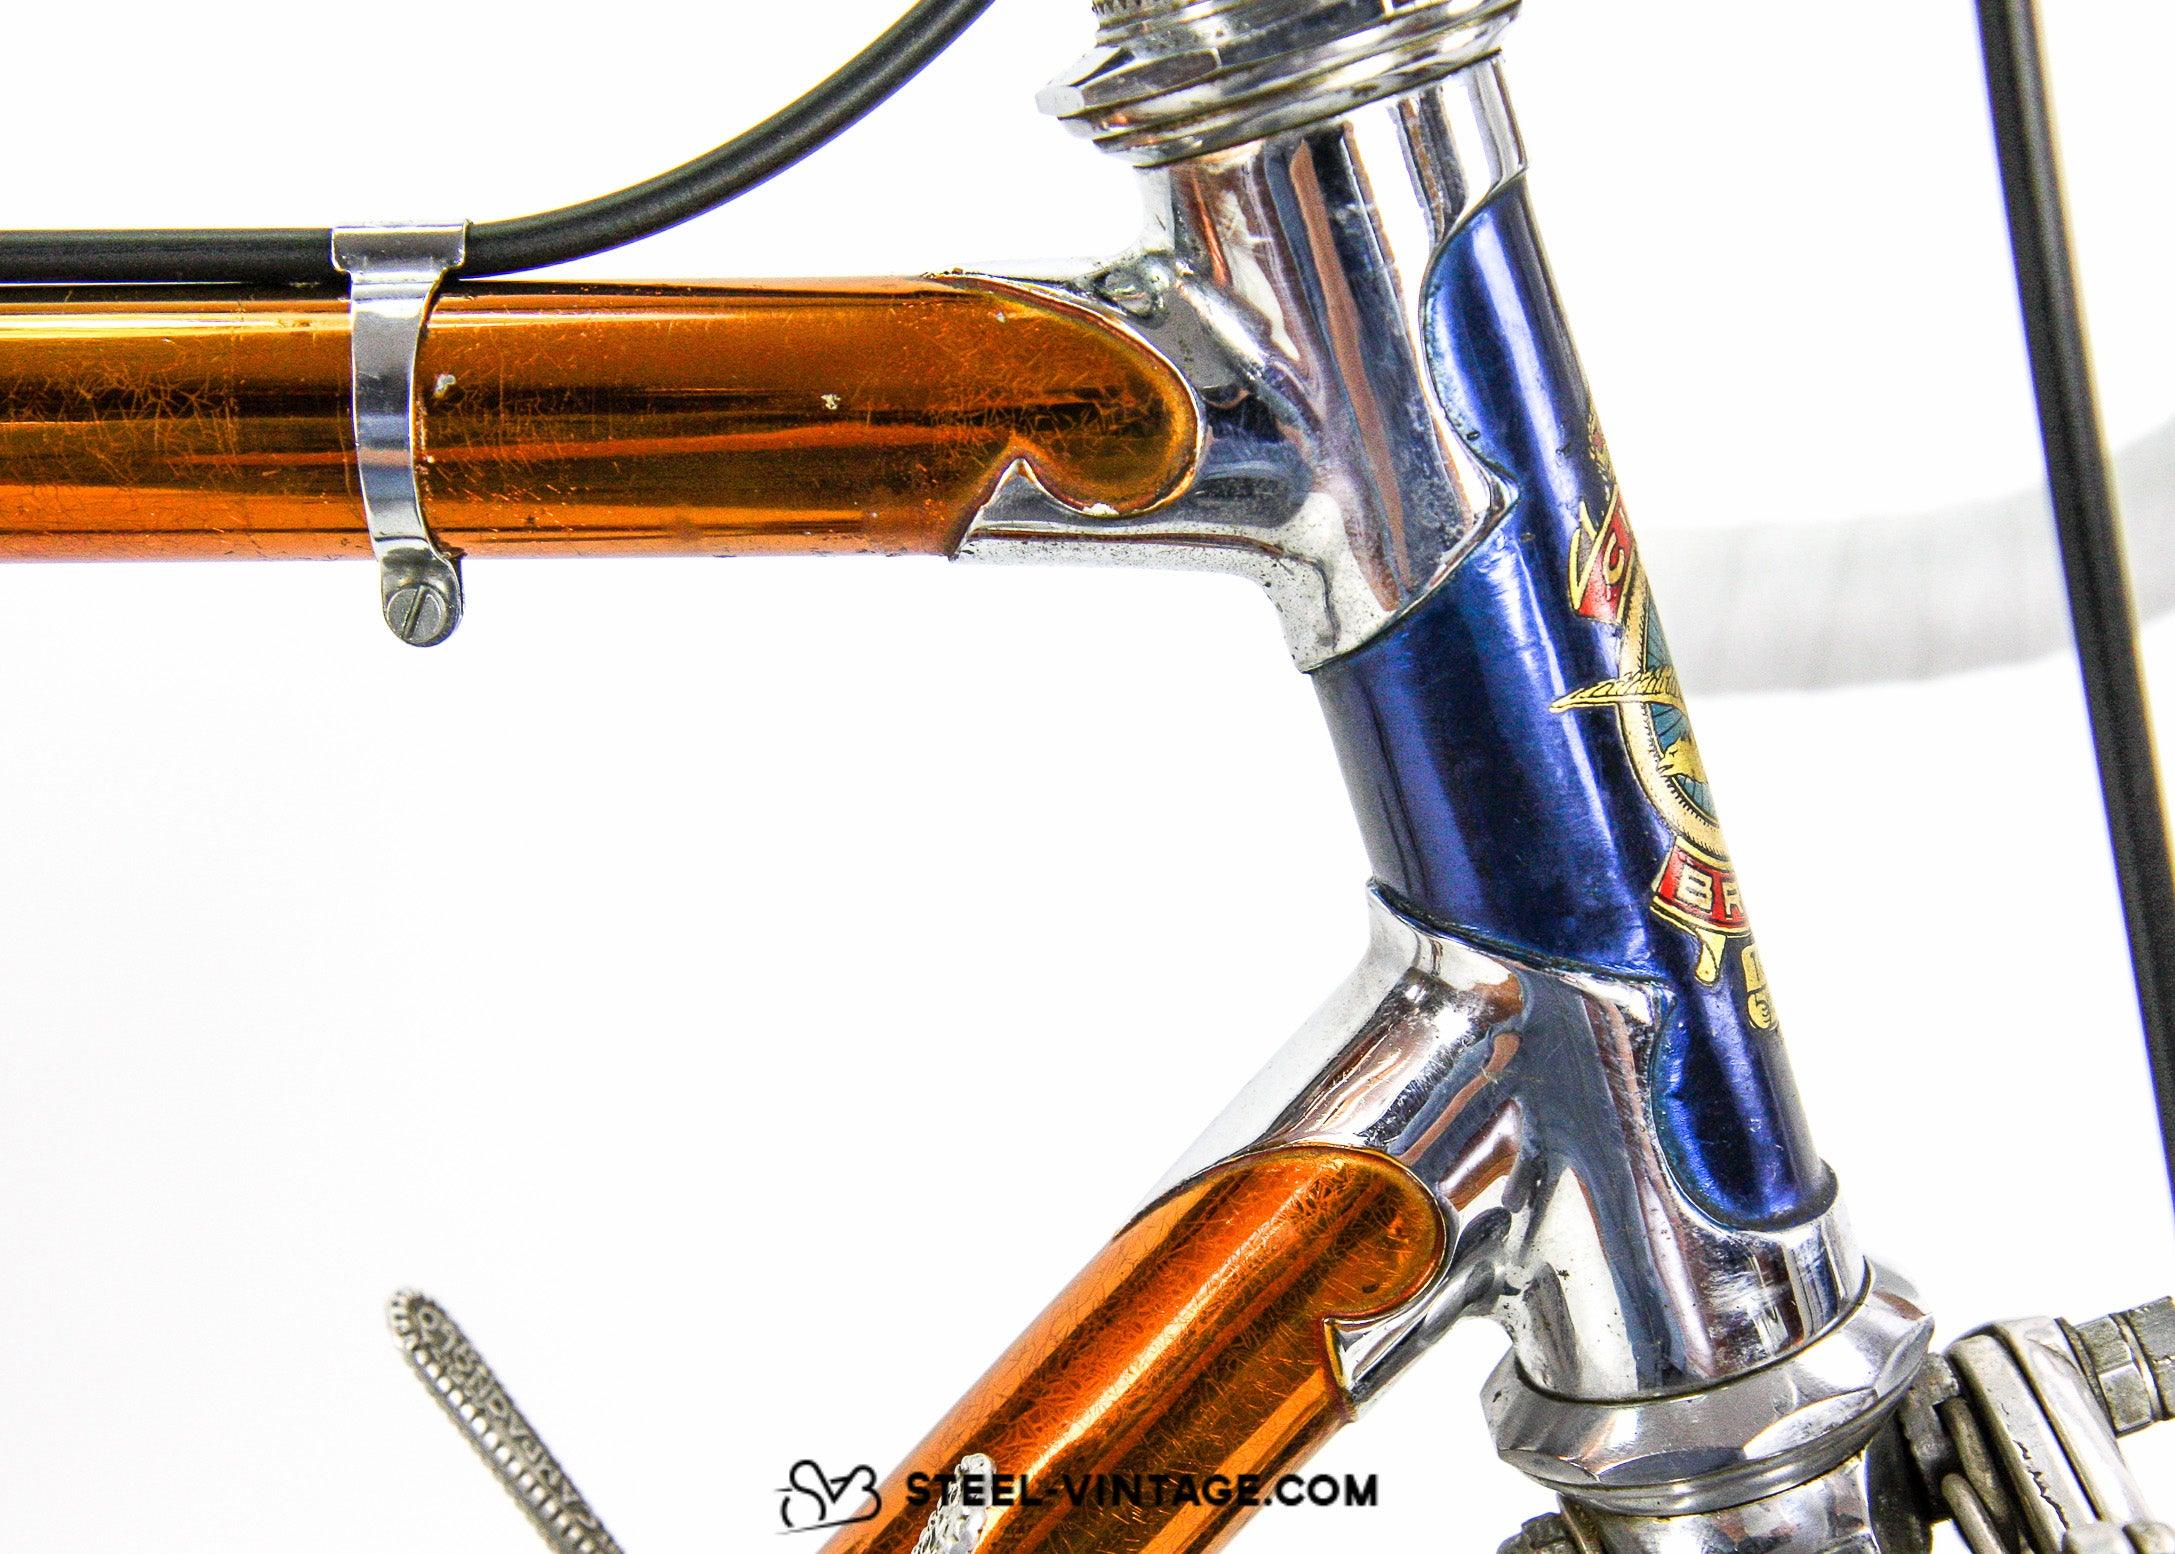 Steel Vintage Bikes - ブルーノ クラシック・イタリアン・スチール 